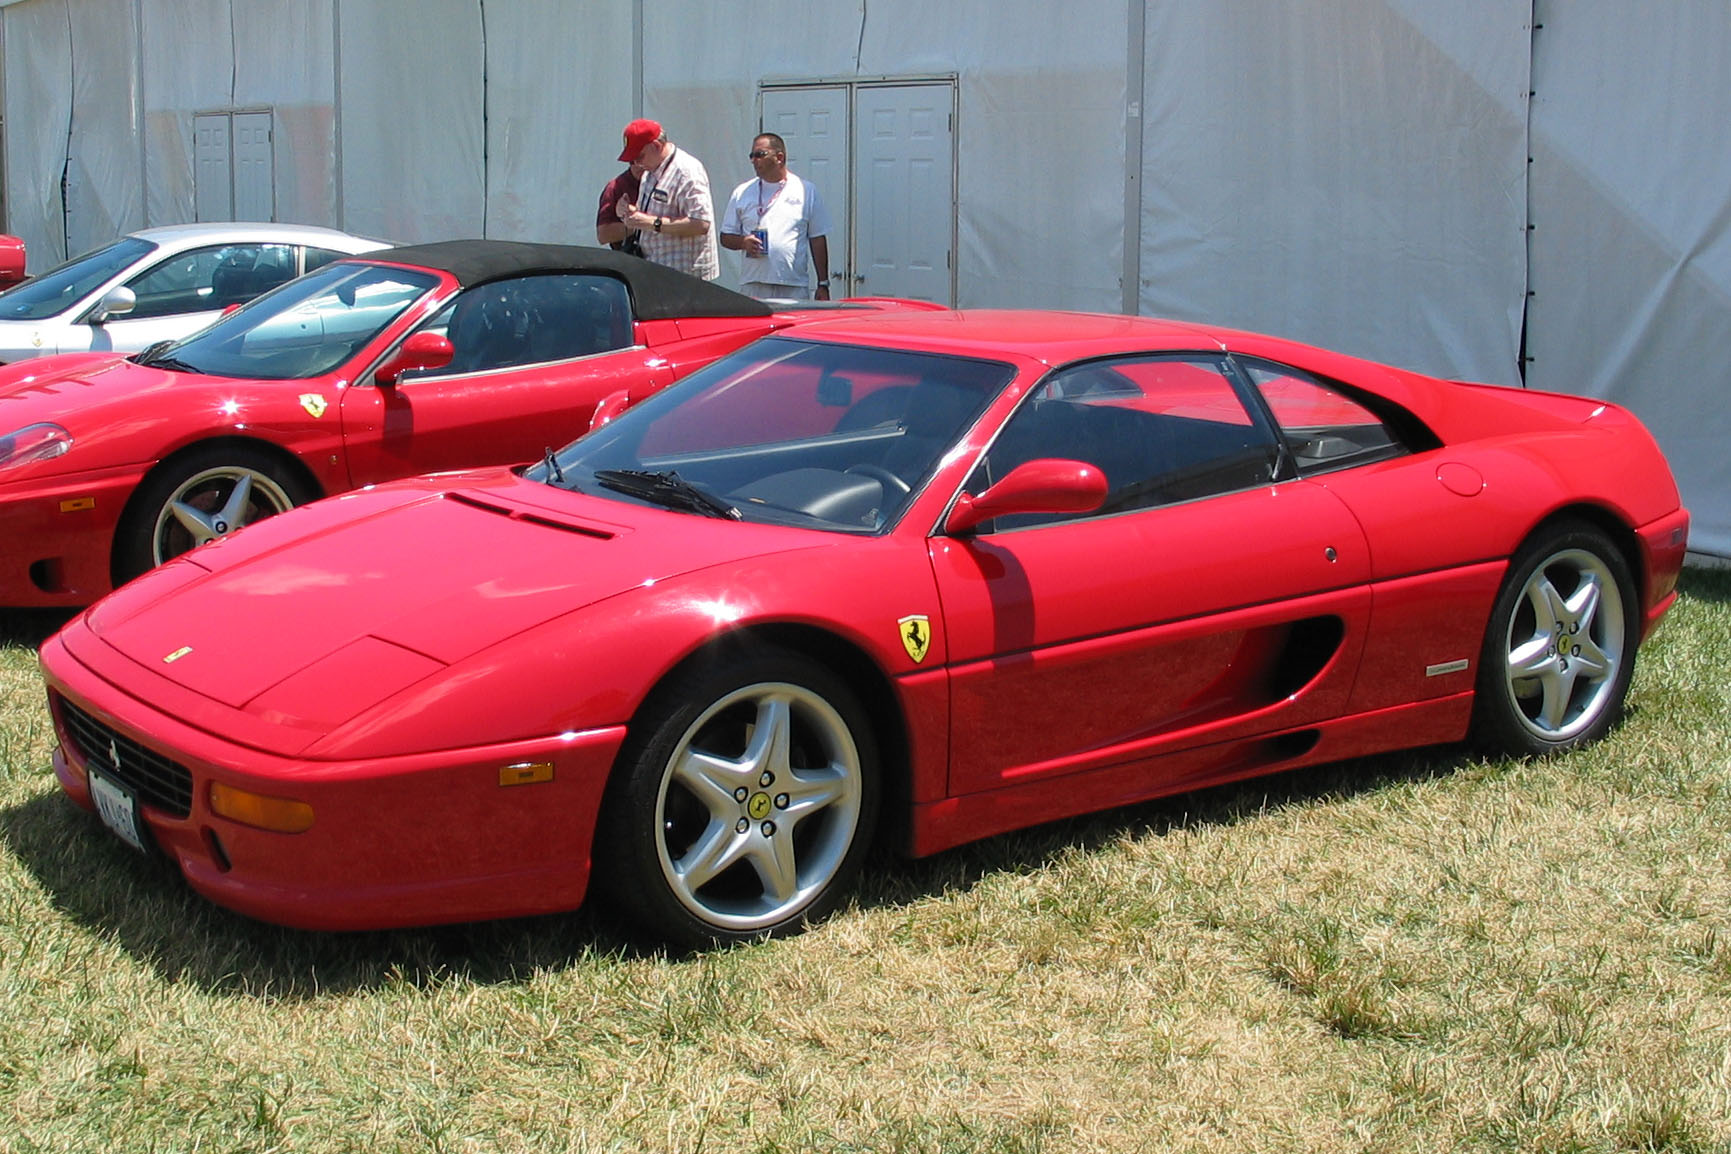 Ferrari F 355